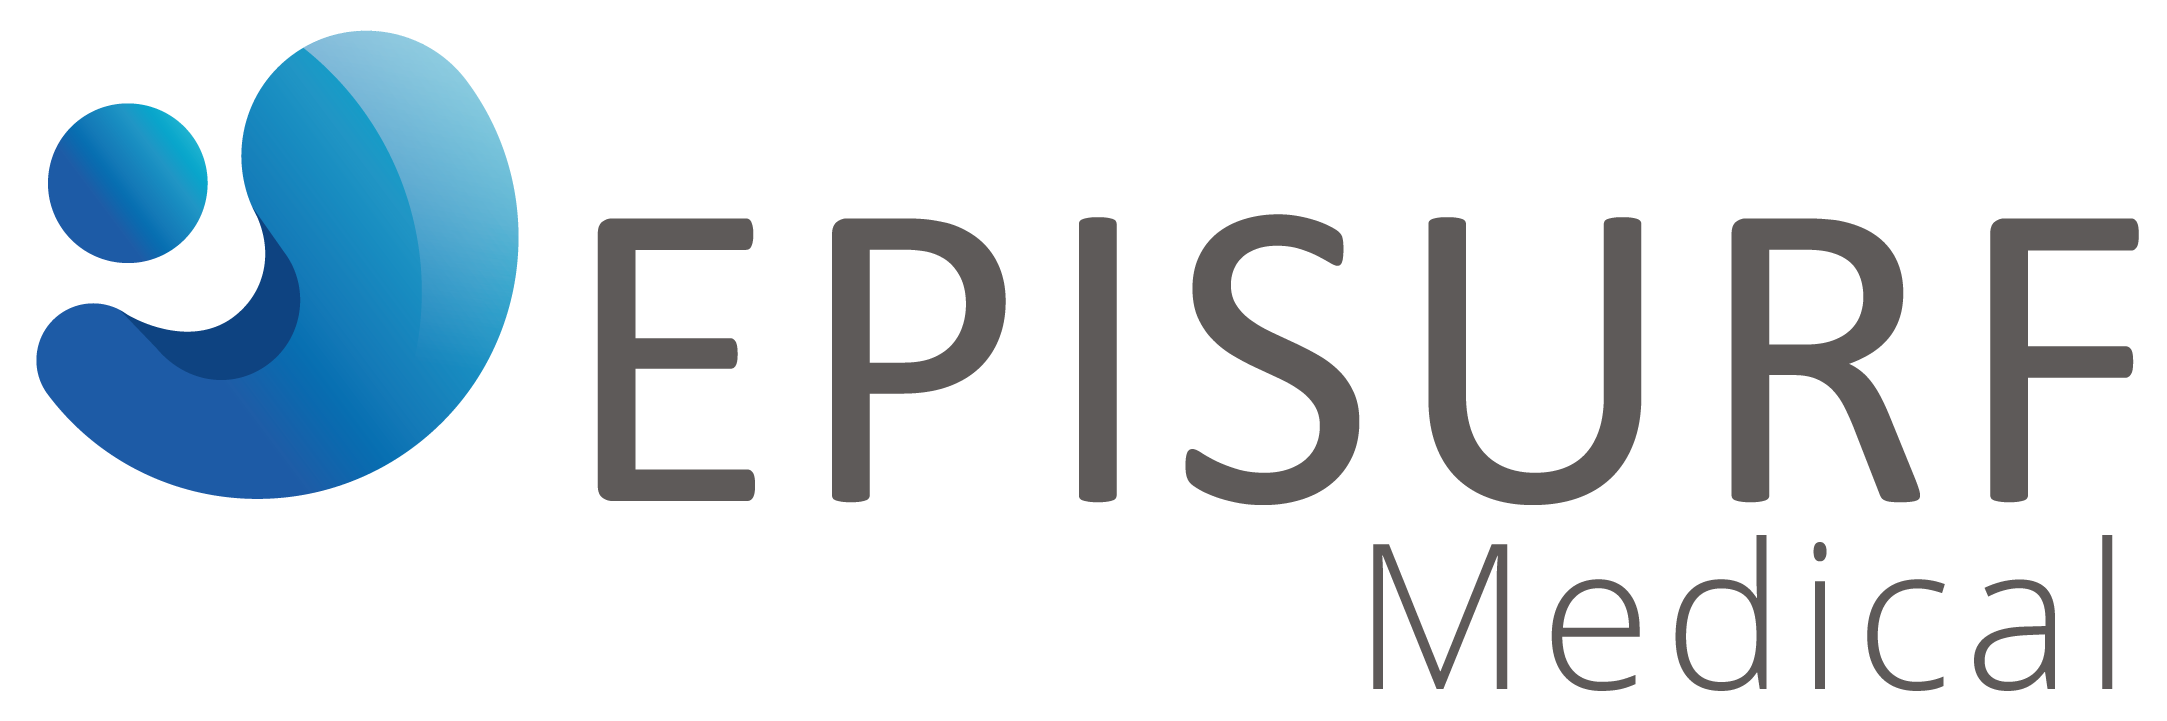 Episurf Medical logo